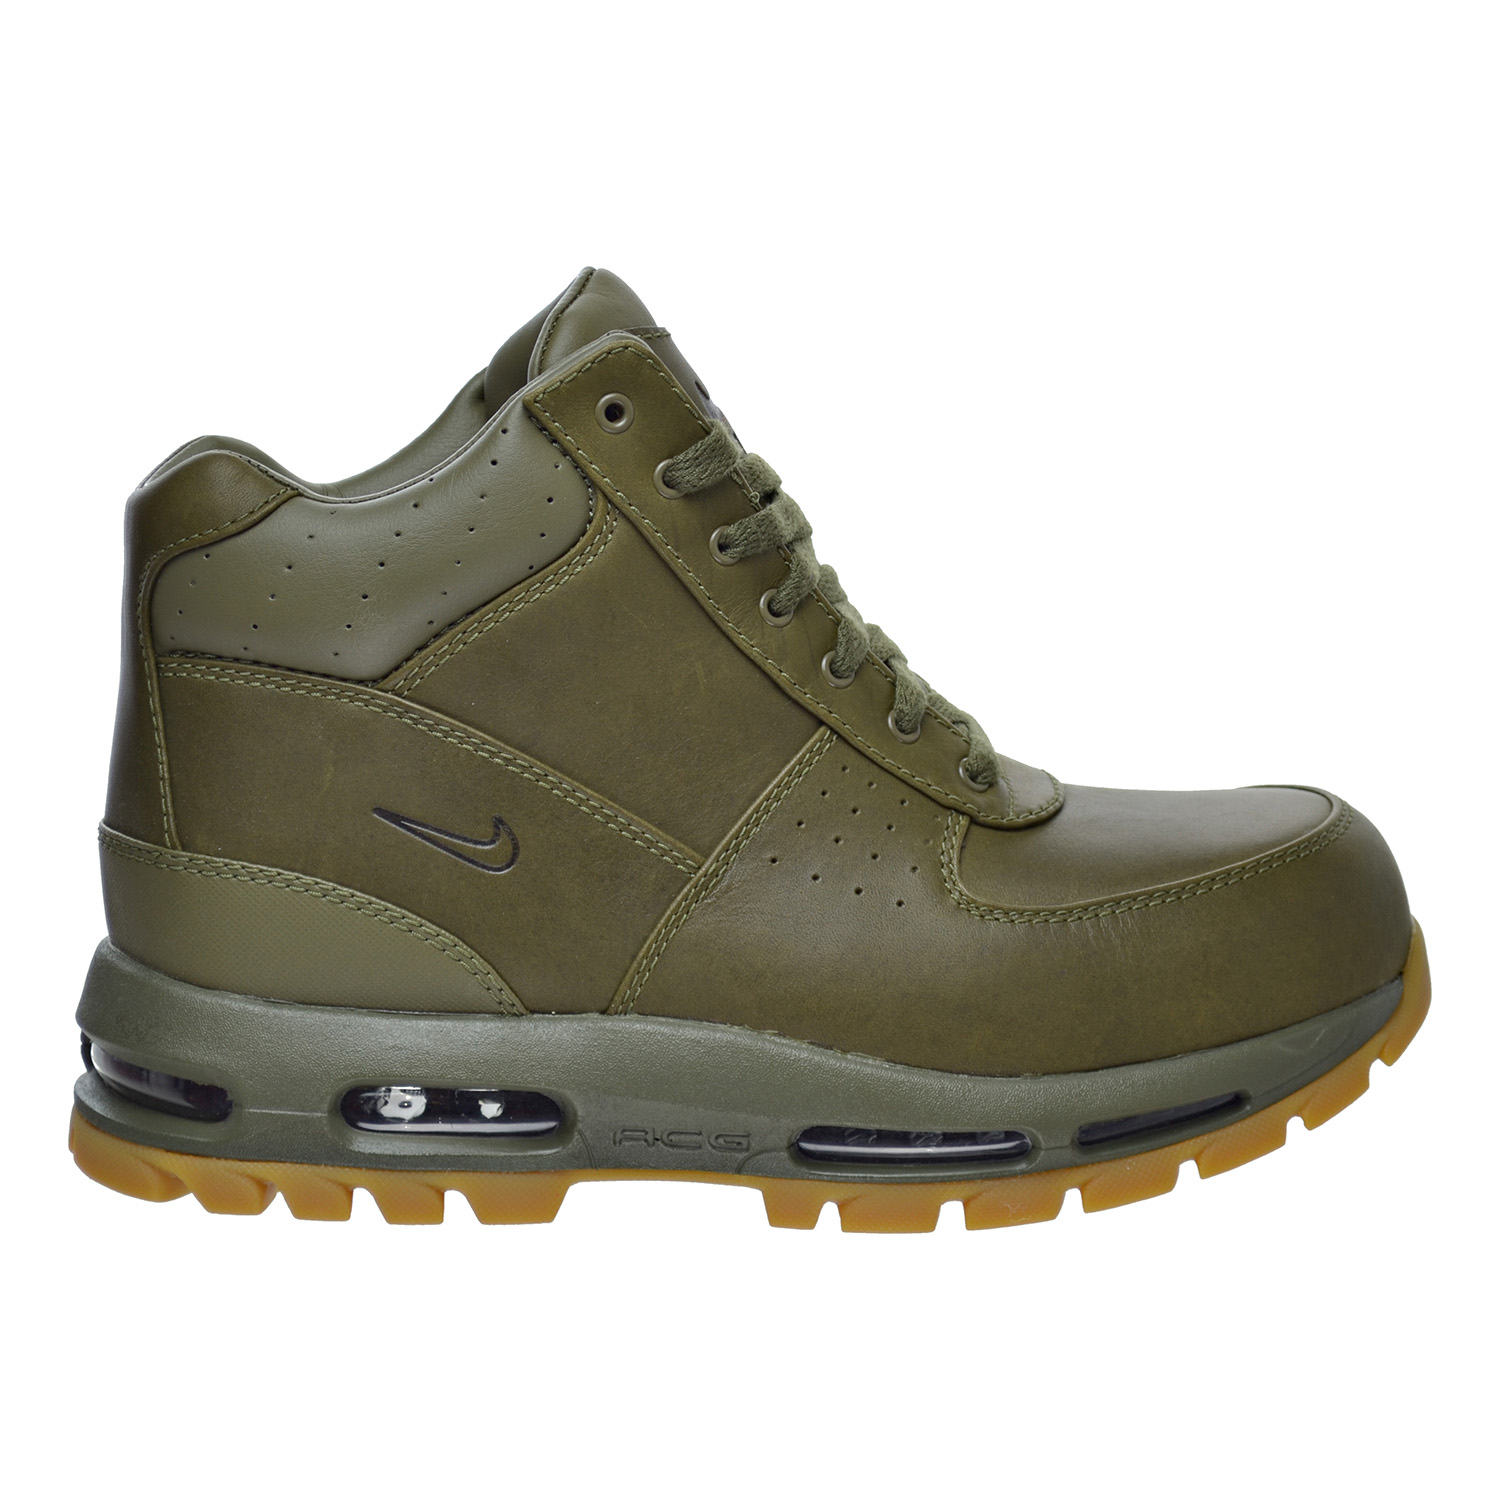 Nike Air Max Goadome Men's Boots Medium Olive 865031-209 (8 D(M) US)